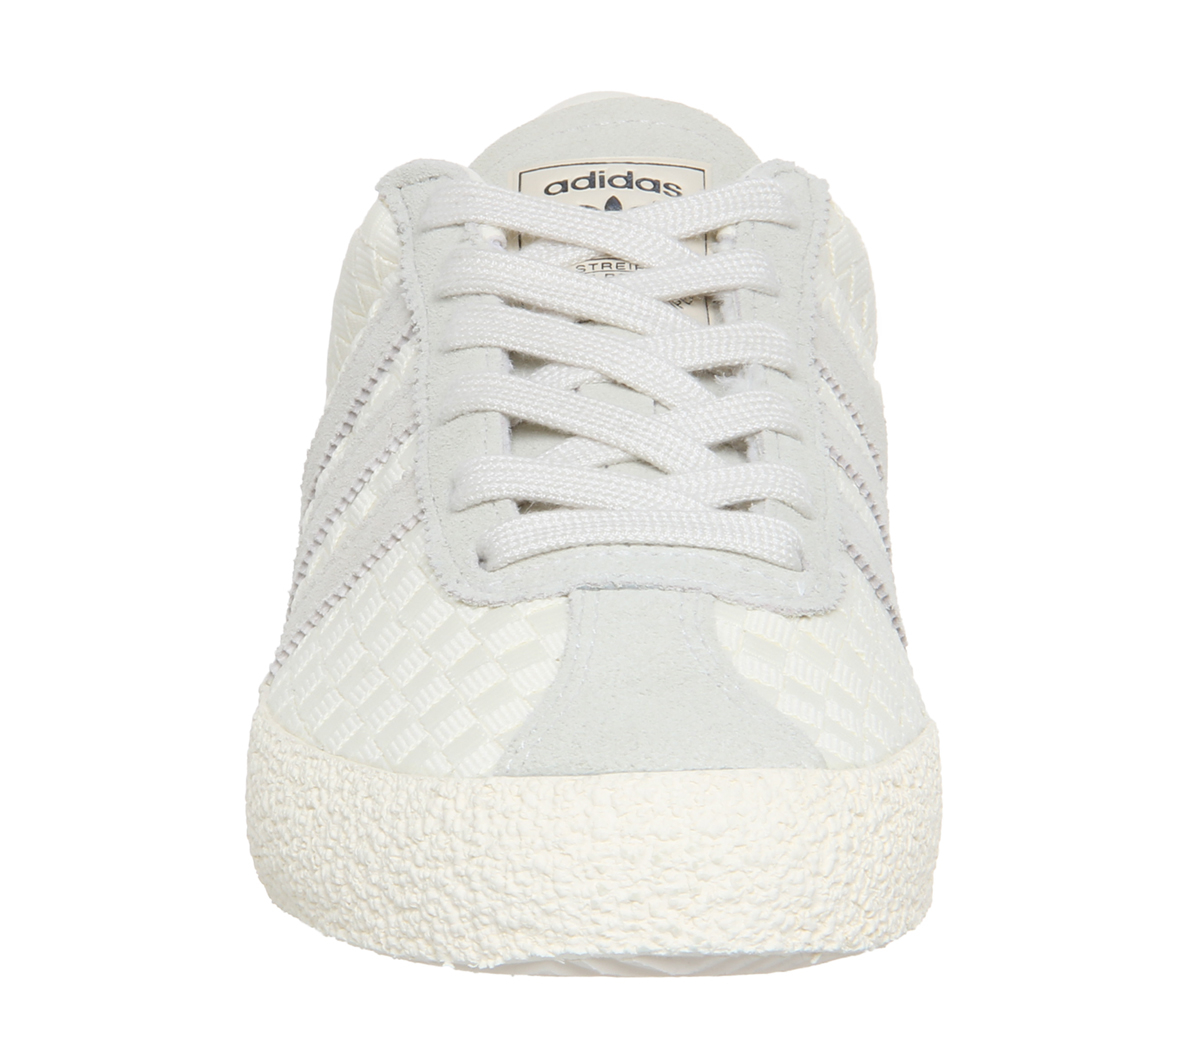 adidas gazelle 70's cream white